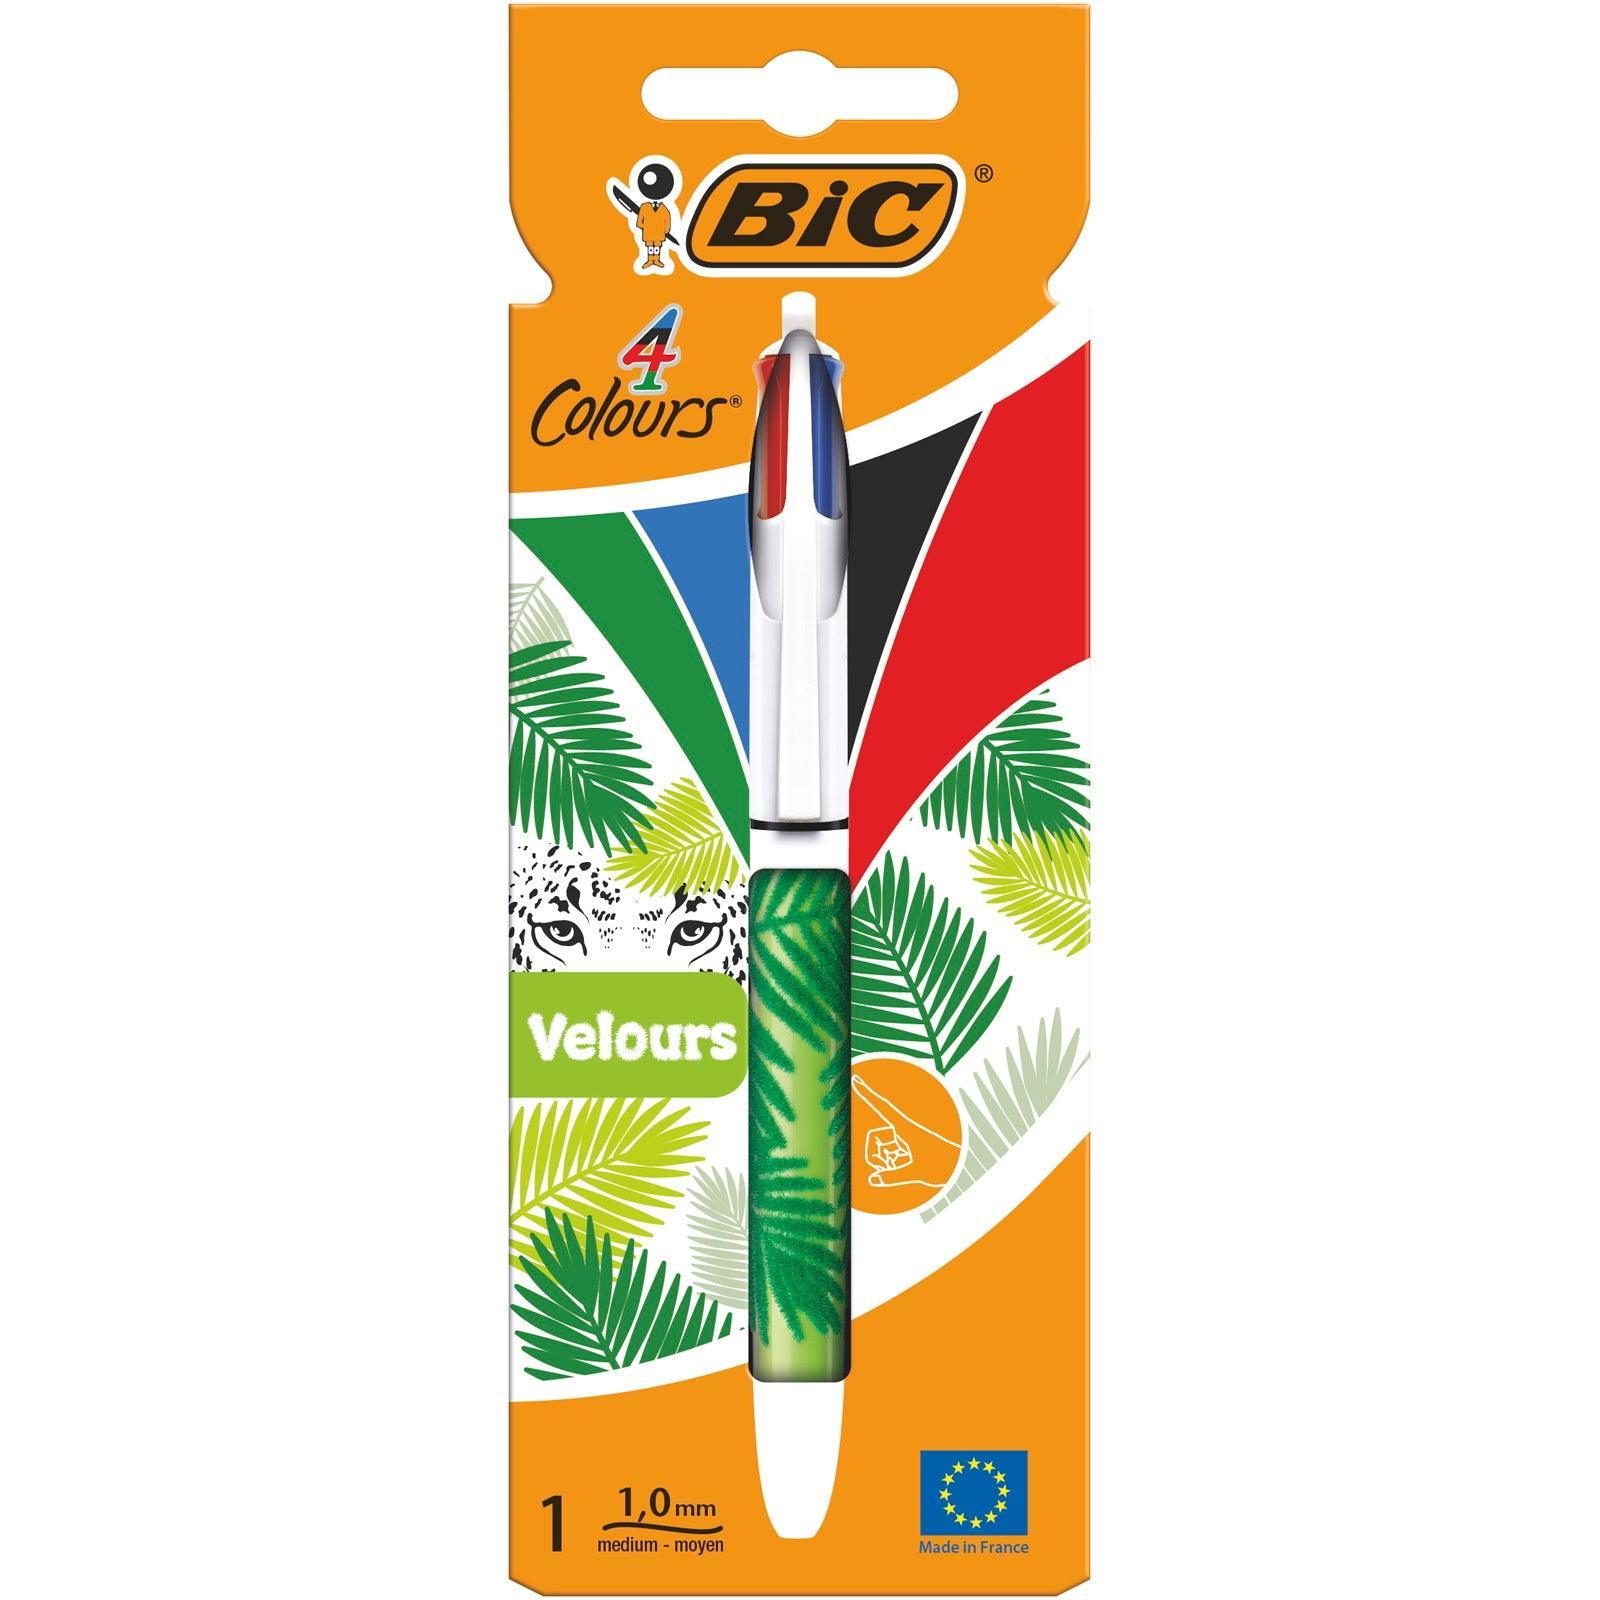 Bic 4 Colours Velours Retractable Ballpoint Pen - Choice Stores